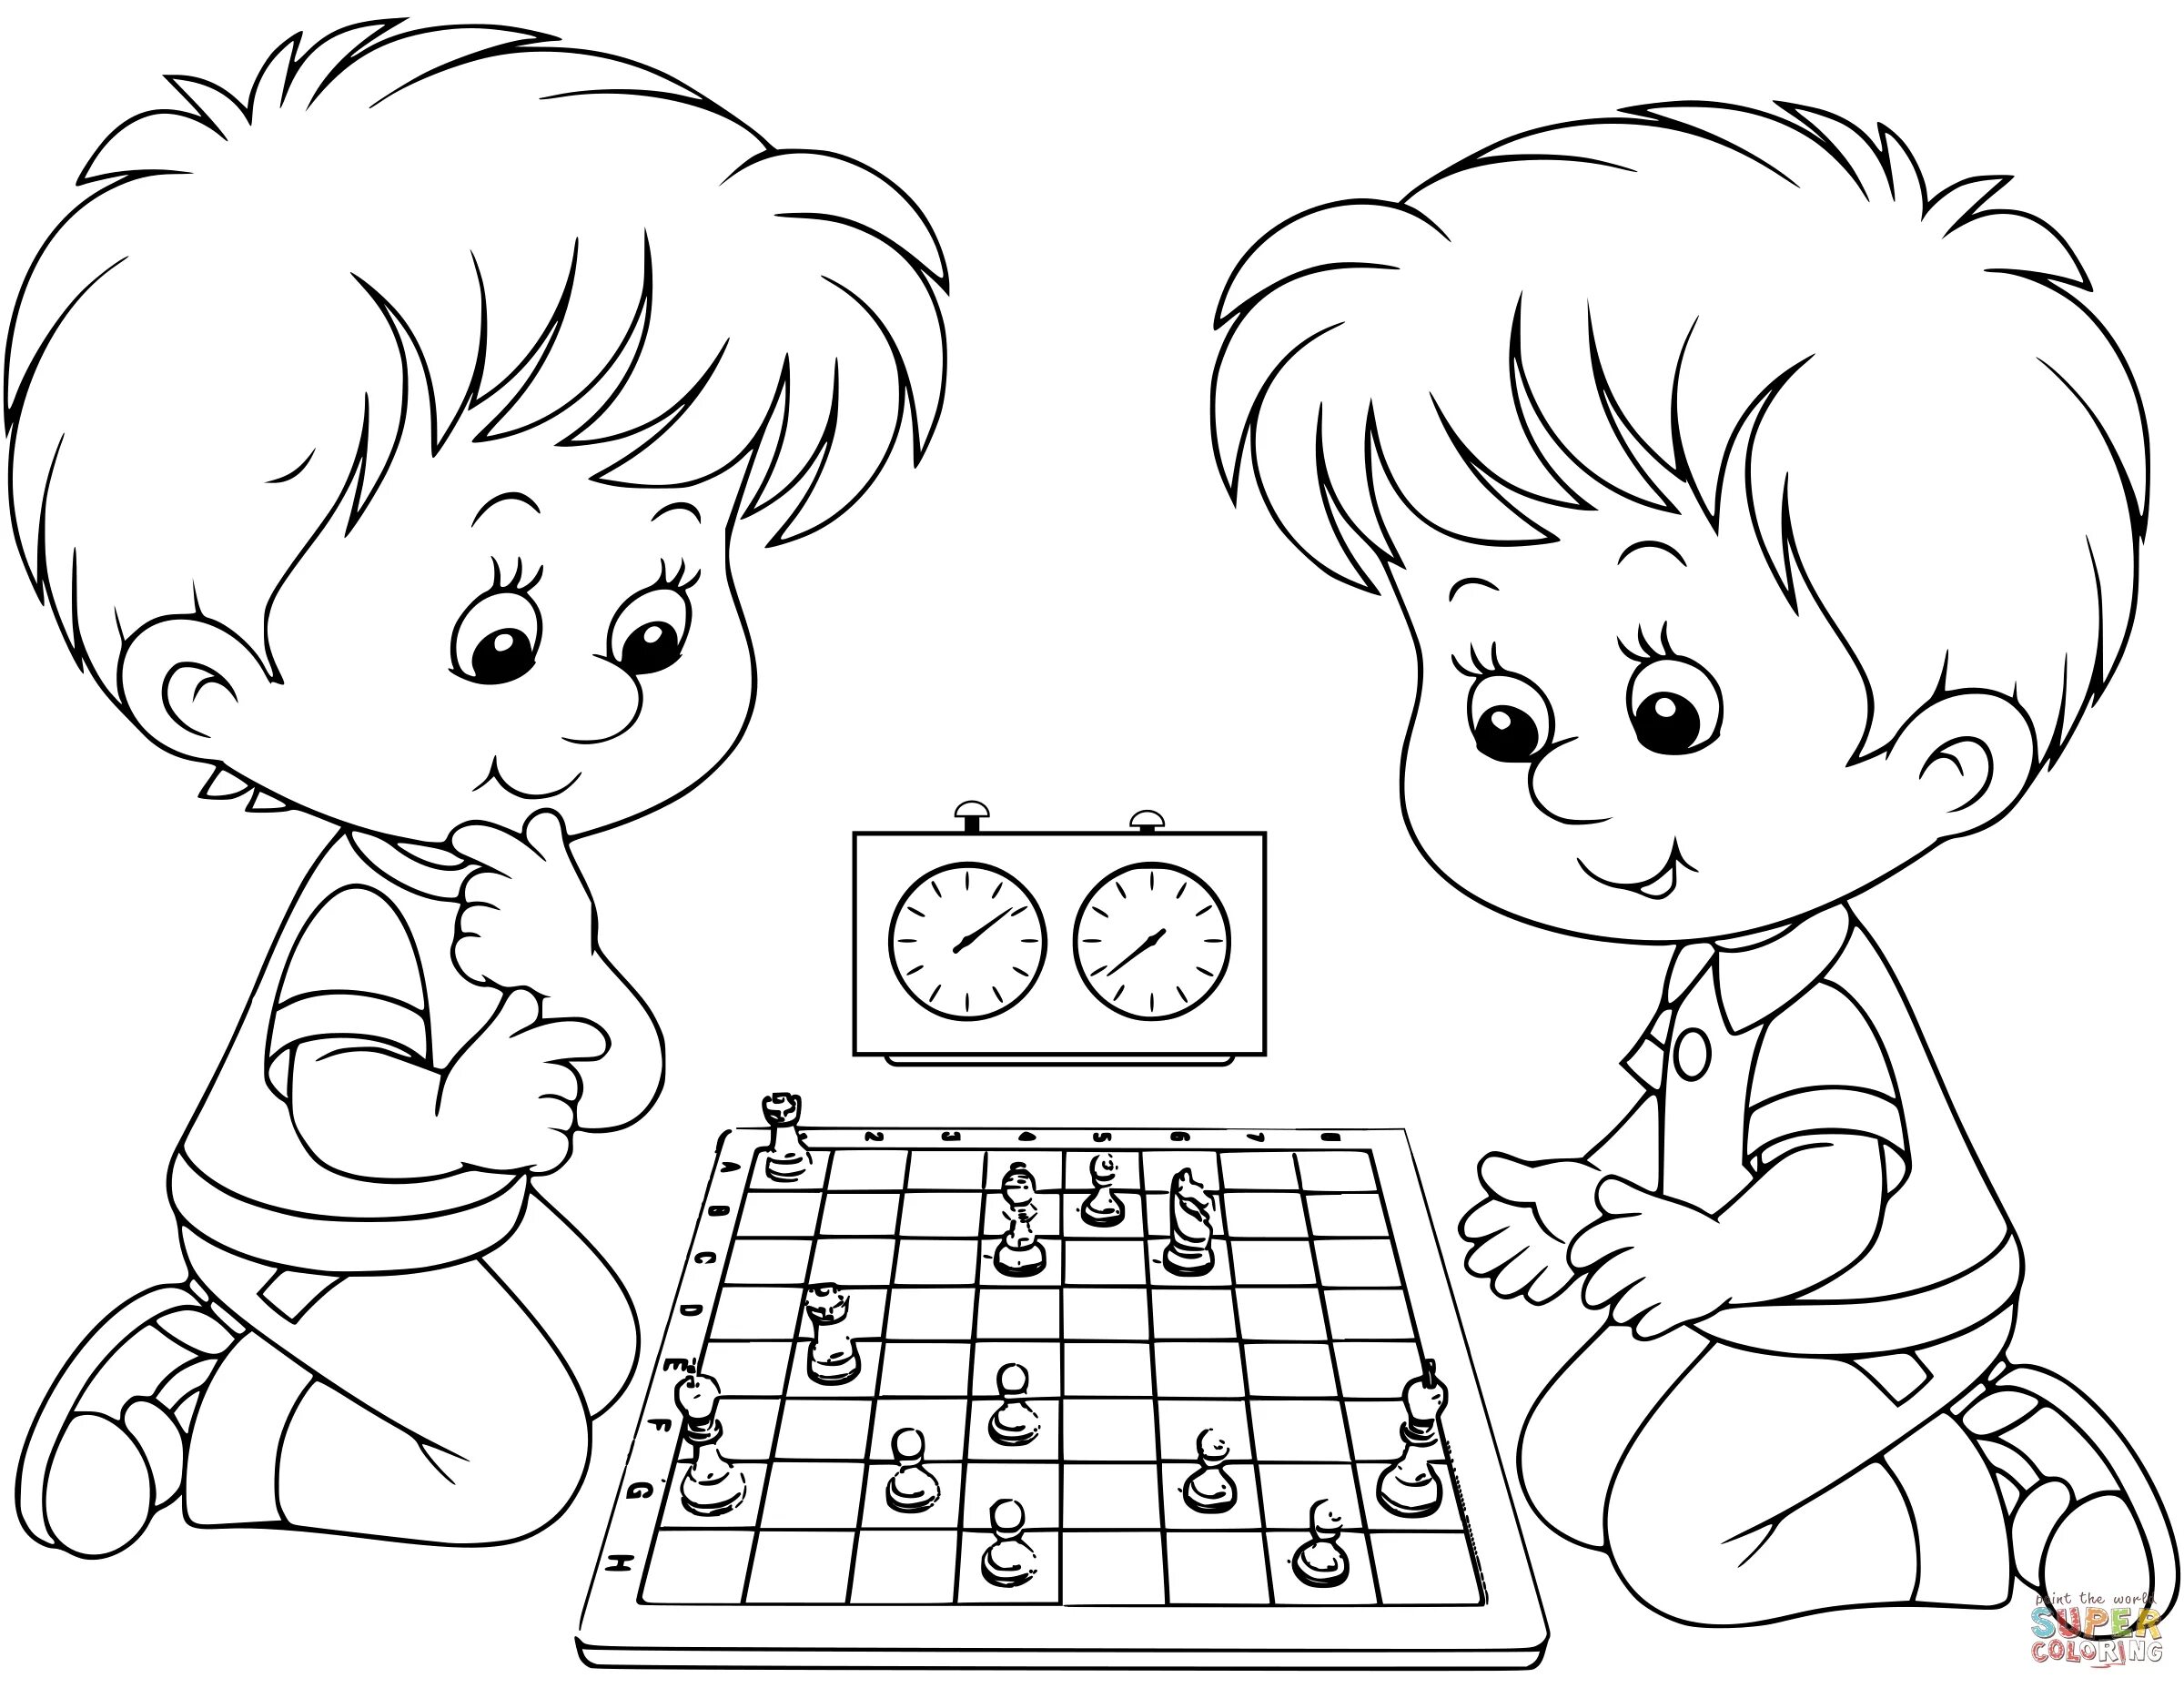 Картинки для детей 6 7. Раскраски. Игры. Шахматы раскраска для детей. Игры для детей: раскраски. Шахматные раскраски для детей.